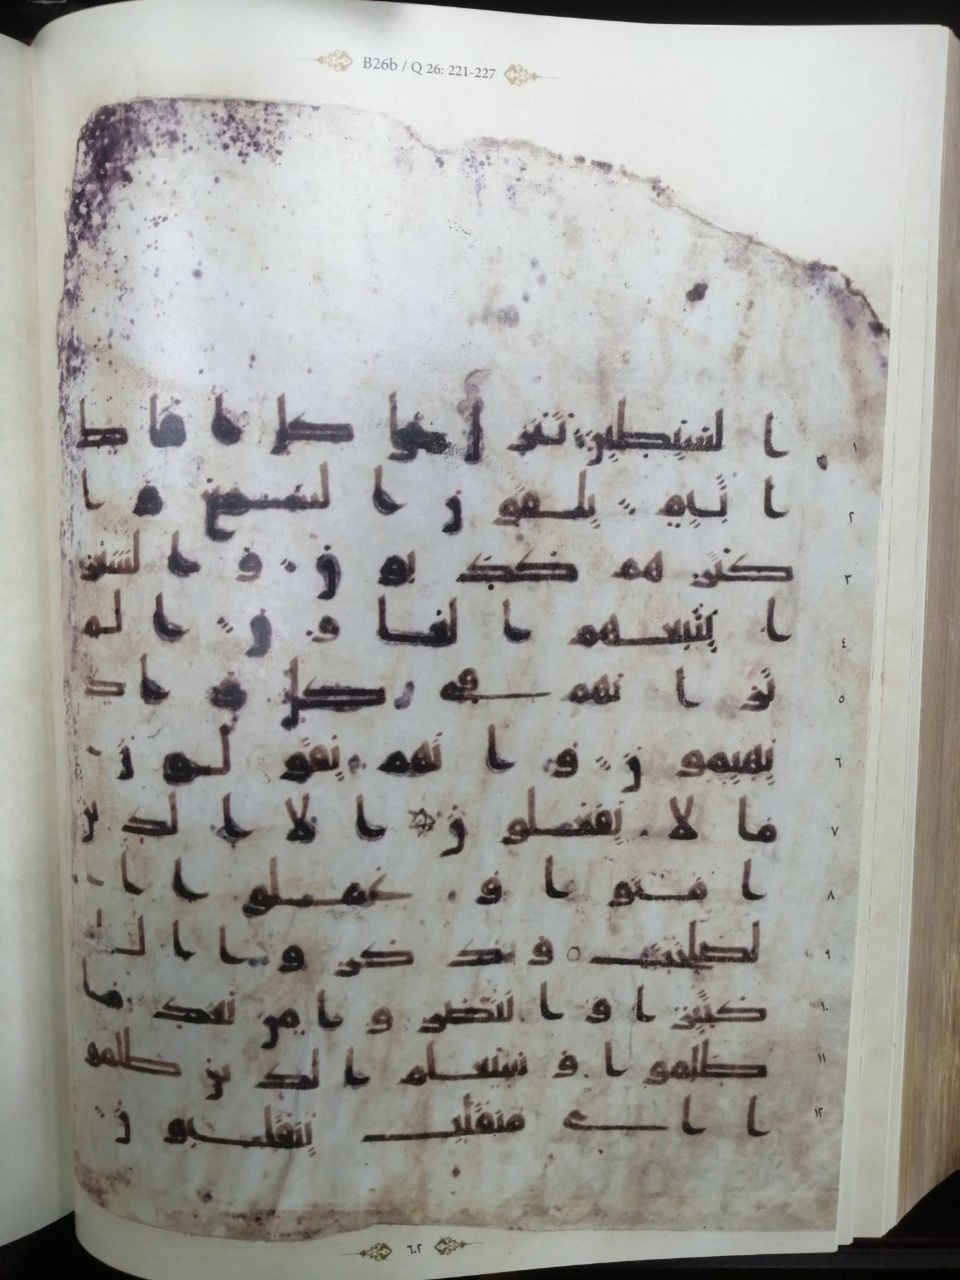 اهدای کپی یک نسخه خطی قرآن کریم به مرکز نسخ خطی آستان قدس عباسی

